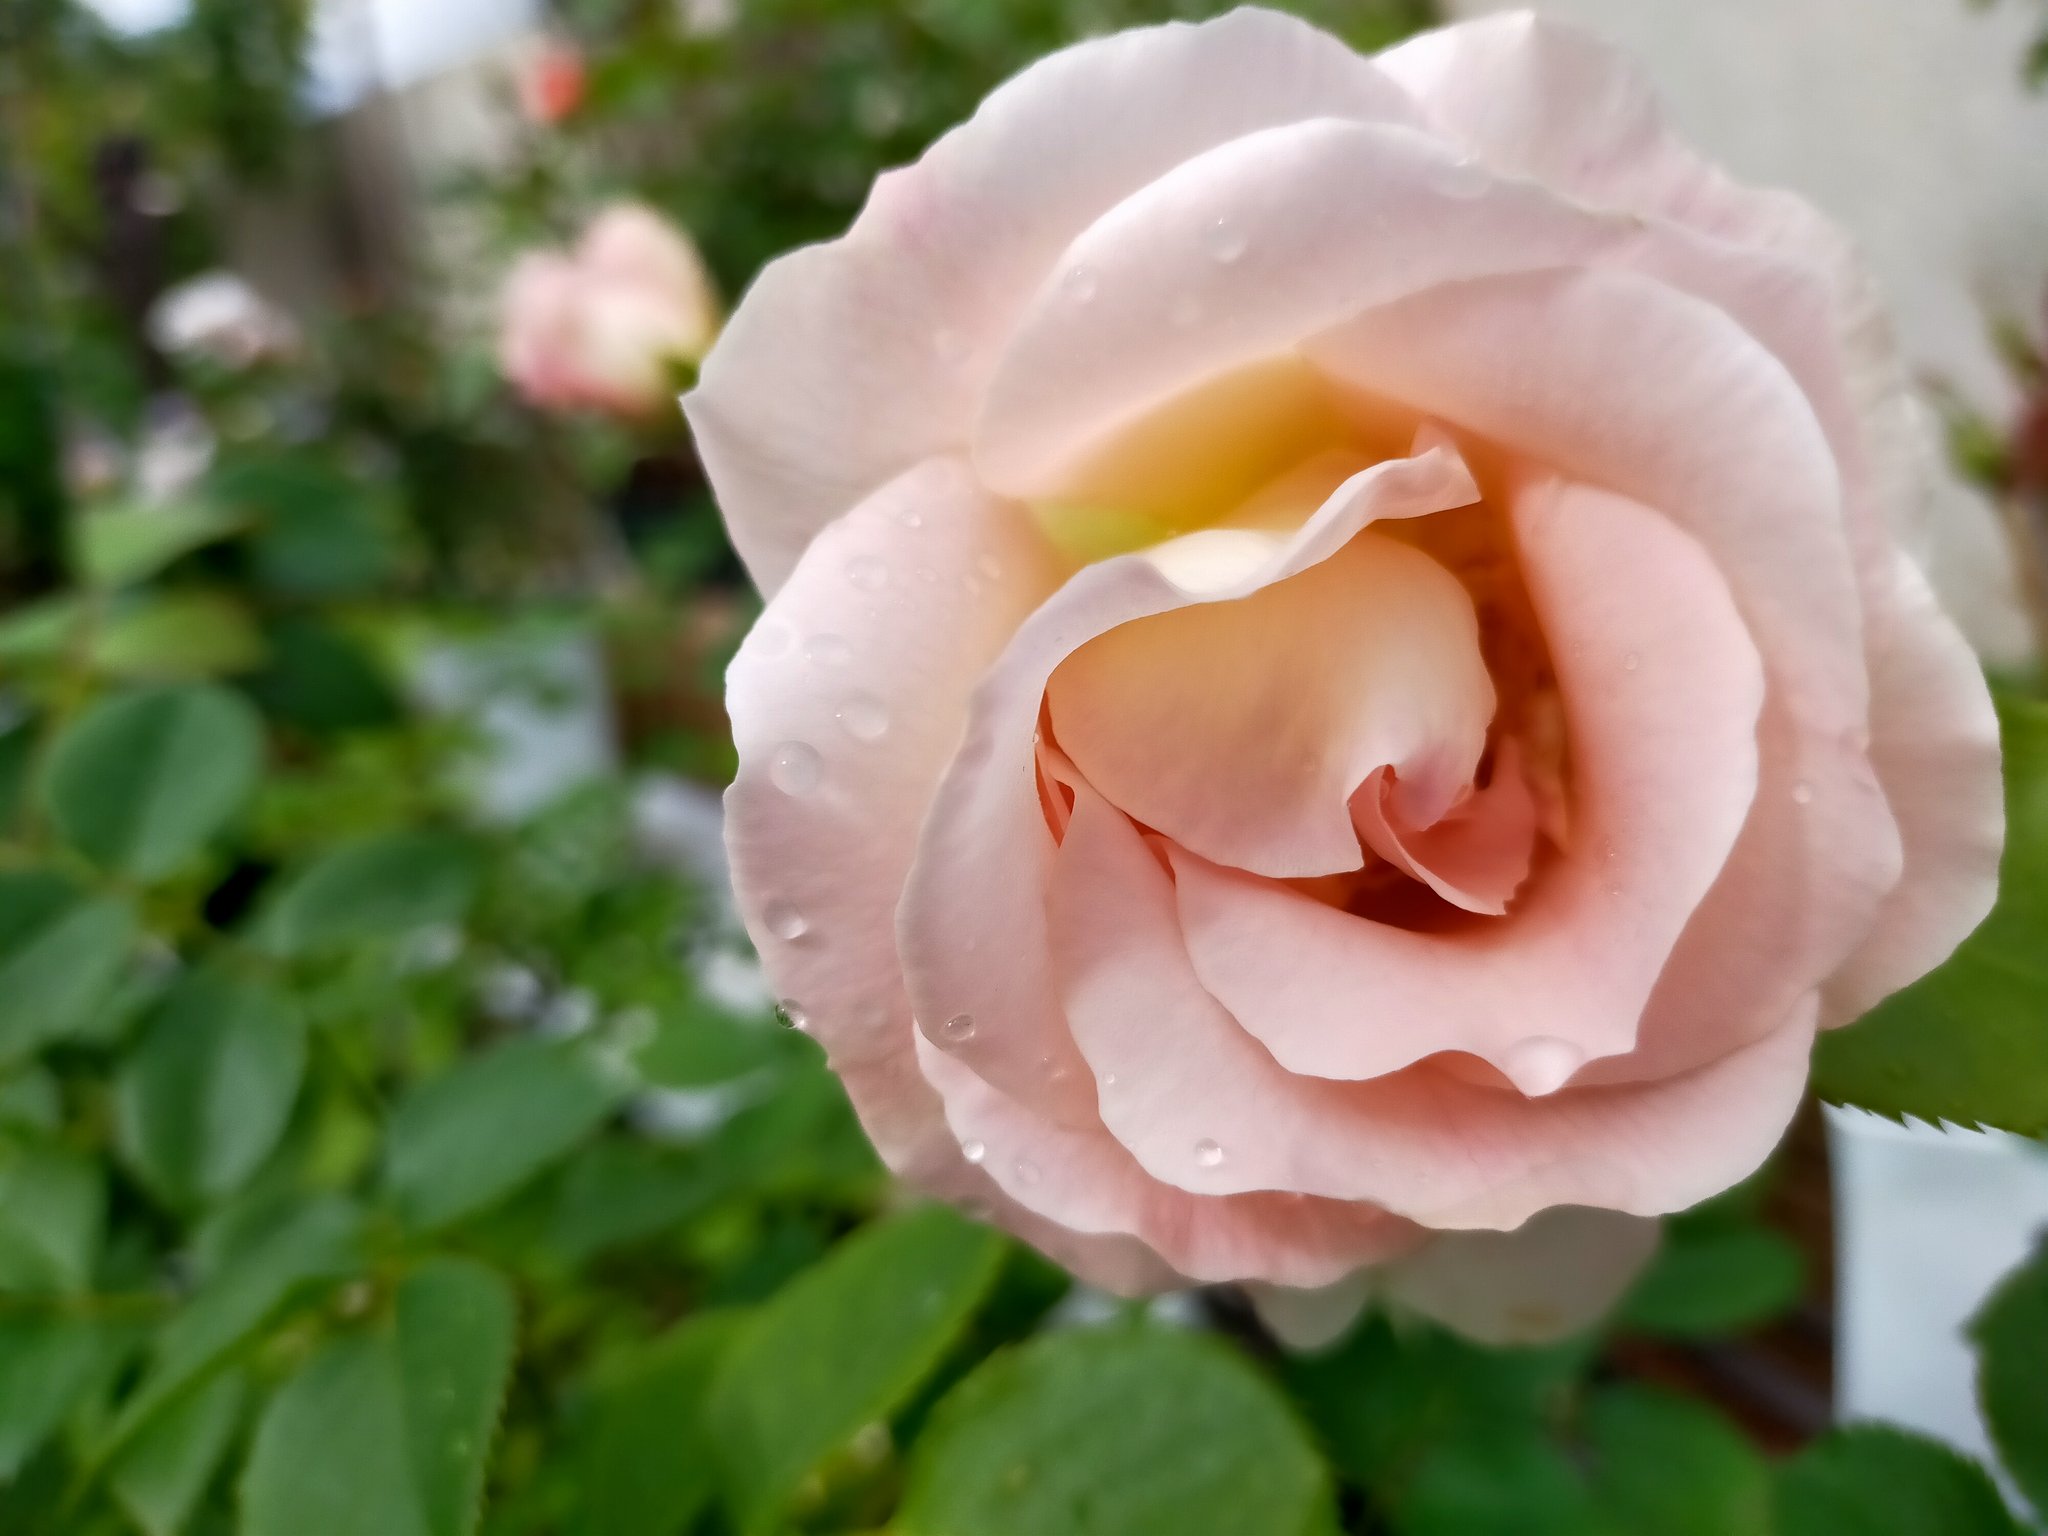 ゆず れおんとお庭 庭にバラの香りが漂ってる ๓ ロココ ベッシュボンボン シェエラザード サイレントラブ 5月の庭 バラ栽培 T Co 7chxxid4wn Twitter